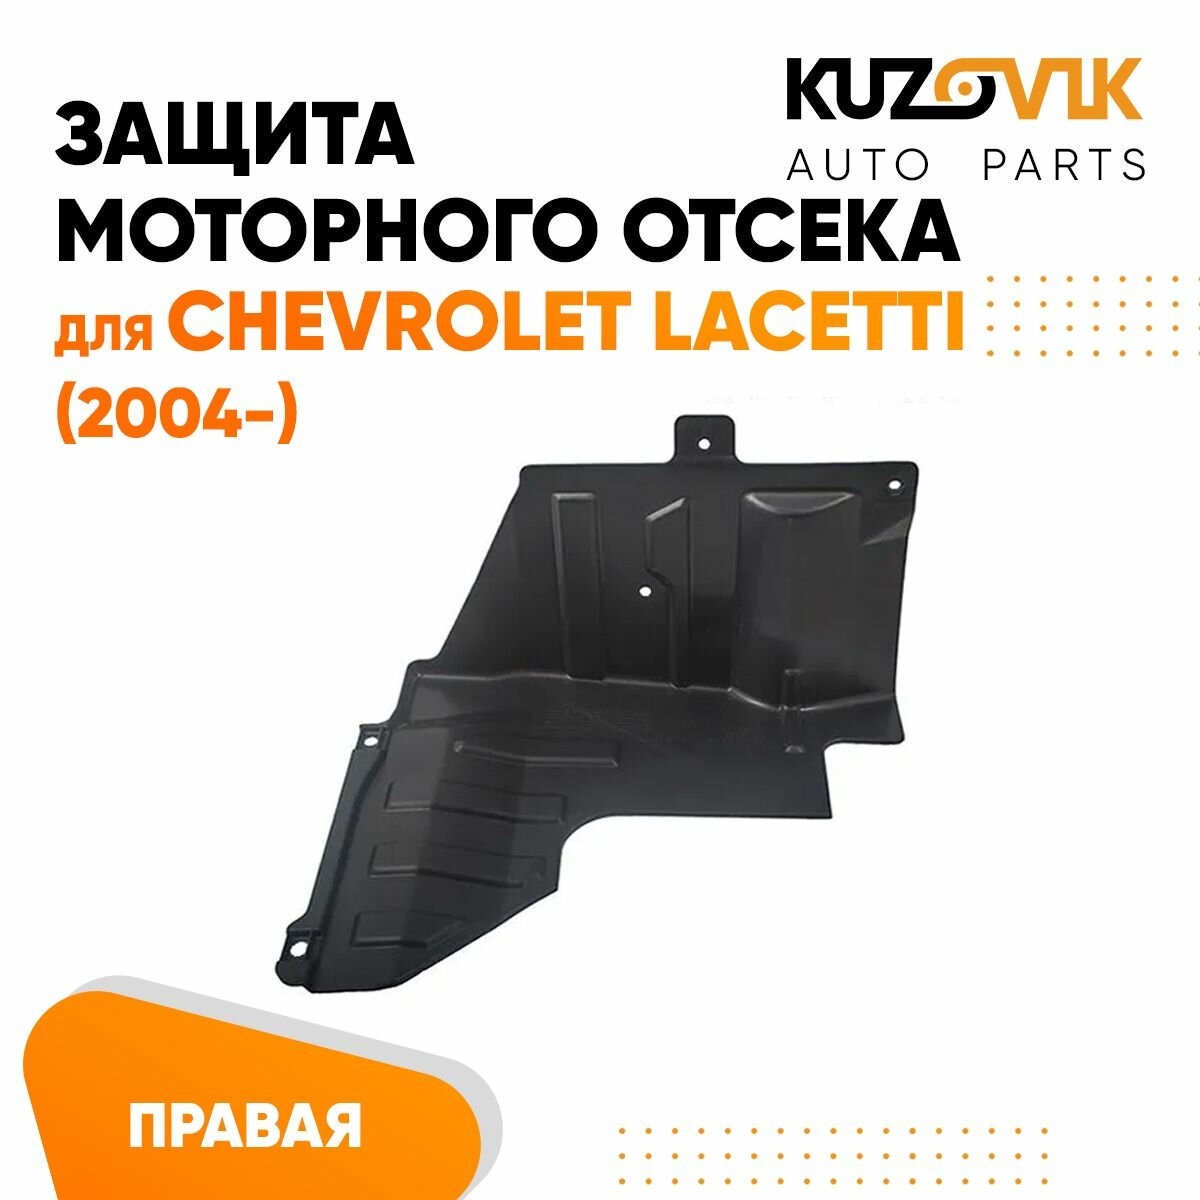 Пыльник защита моторного отсека двигателя правый для Chevrolet Lacetti Шевроле Лачетти (2004-)